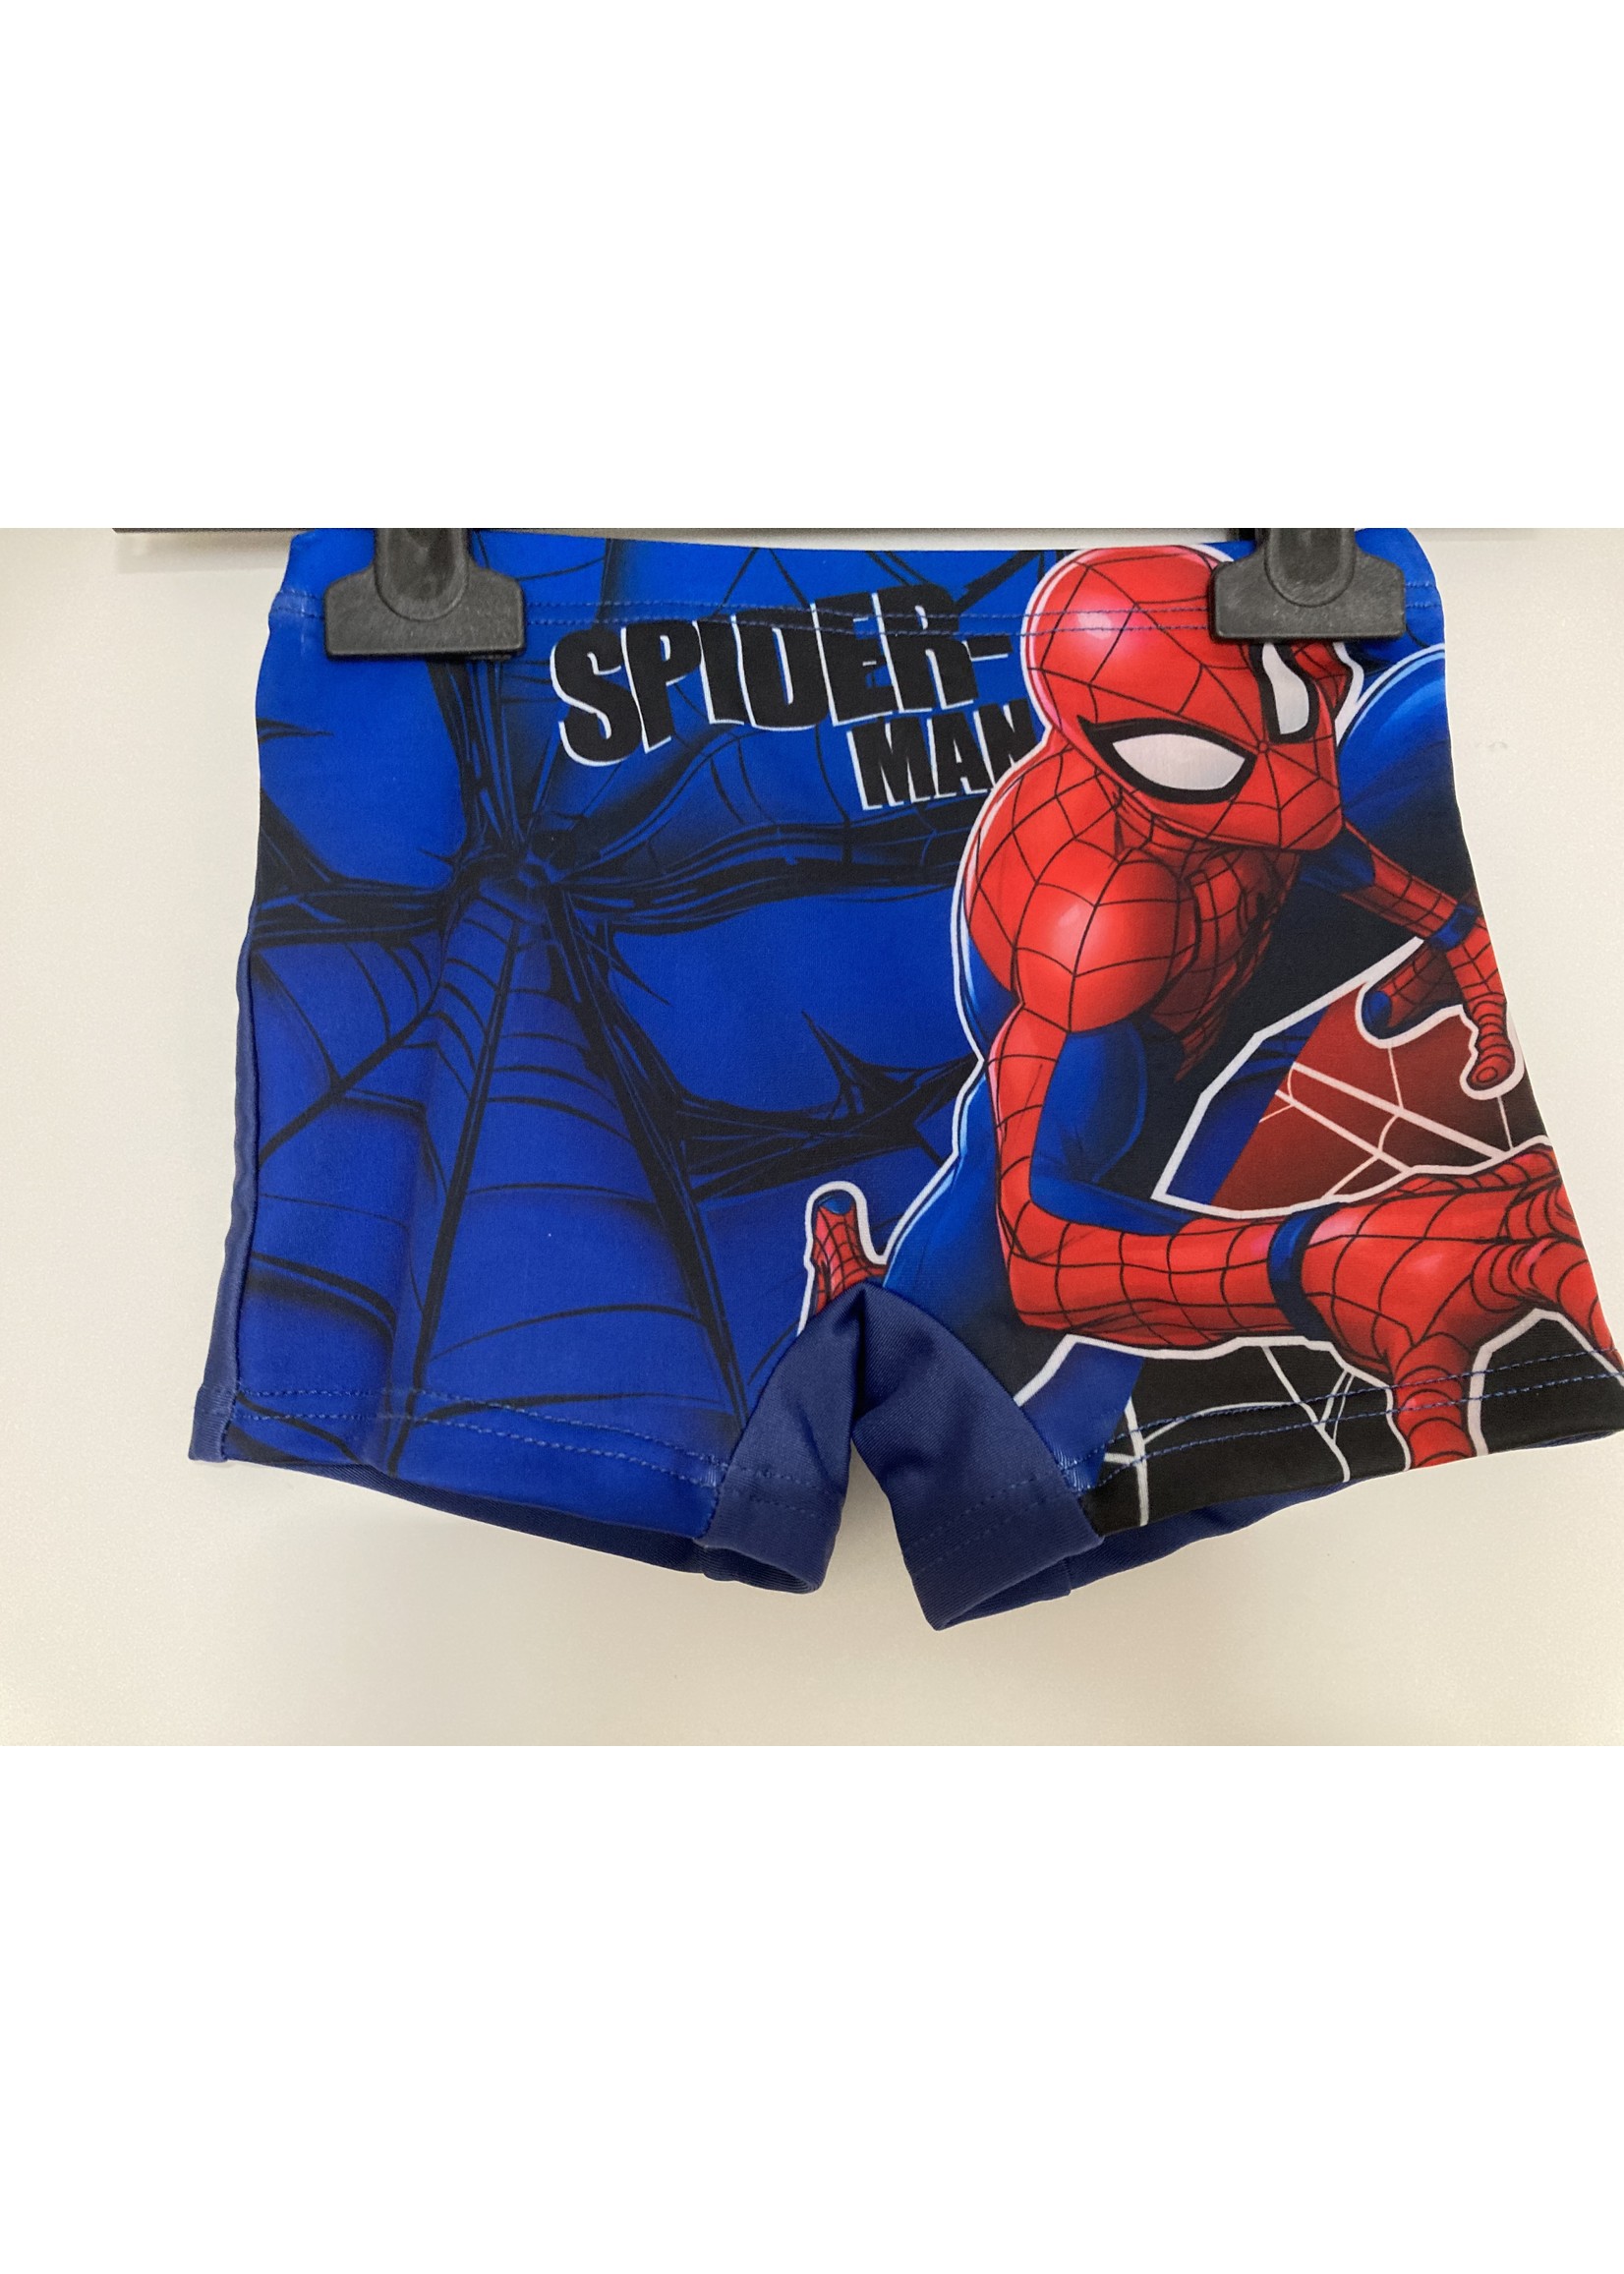 Marvel Spiderman swimsuit from Marvel blue / navy blue